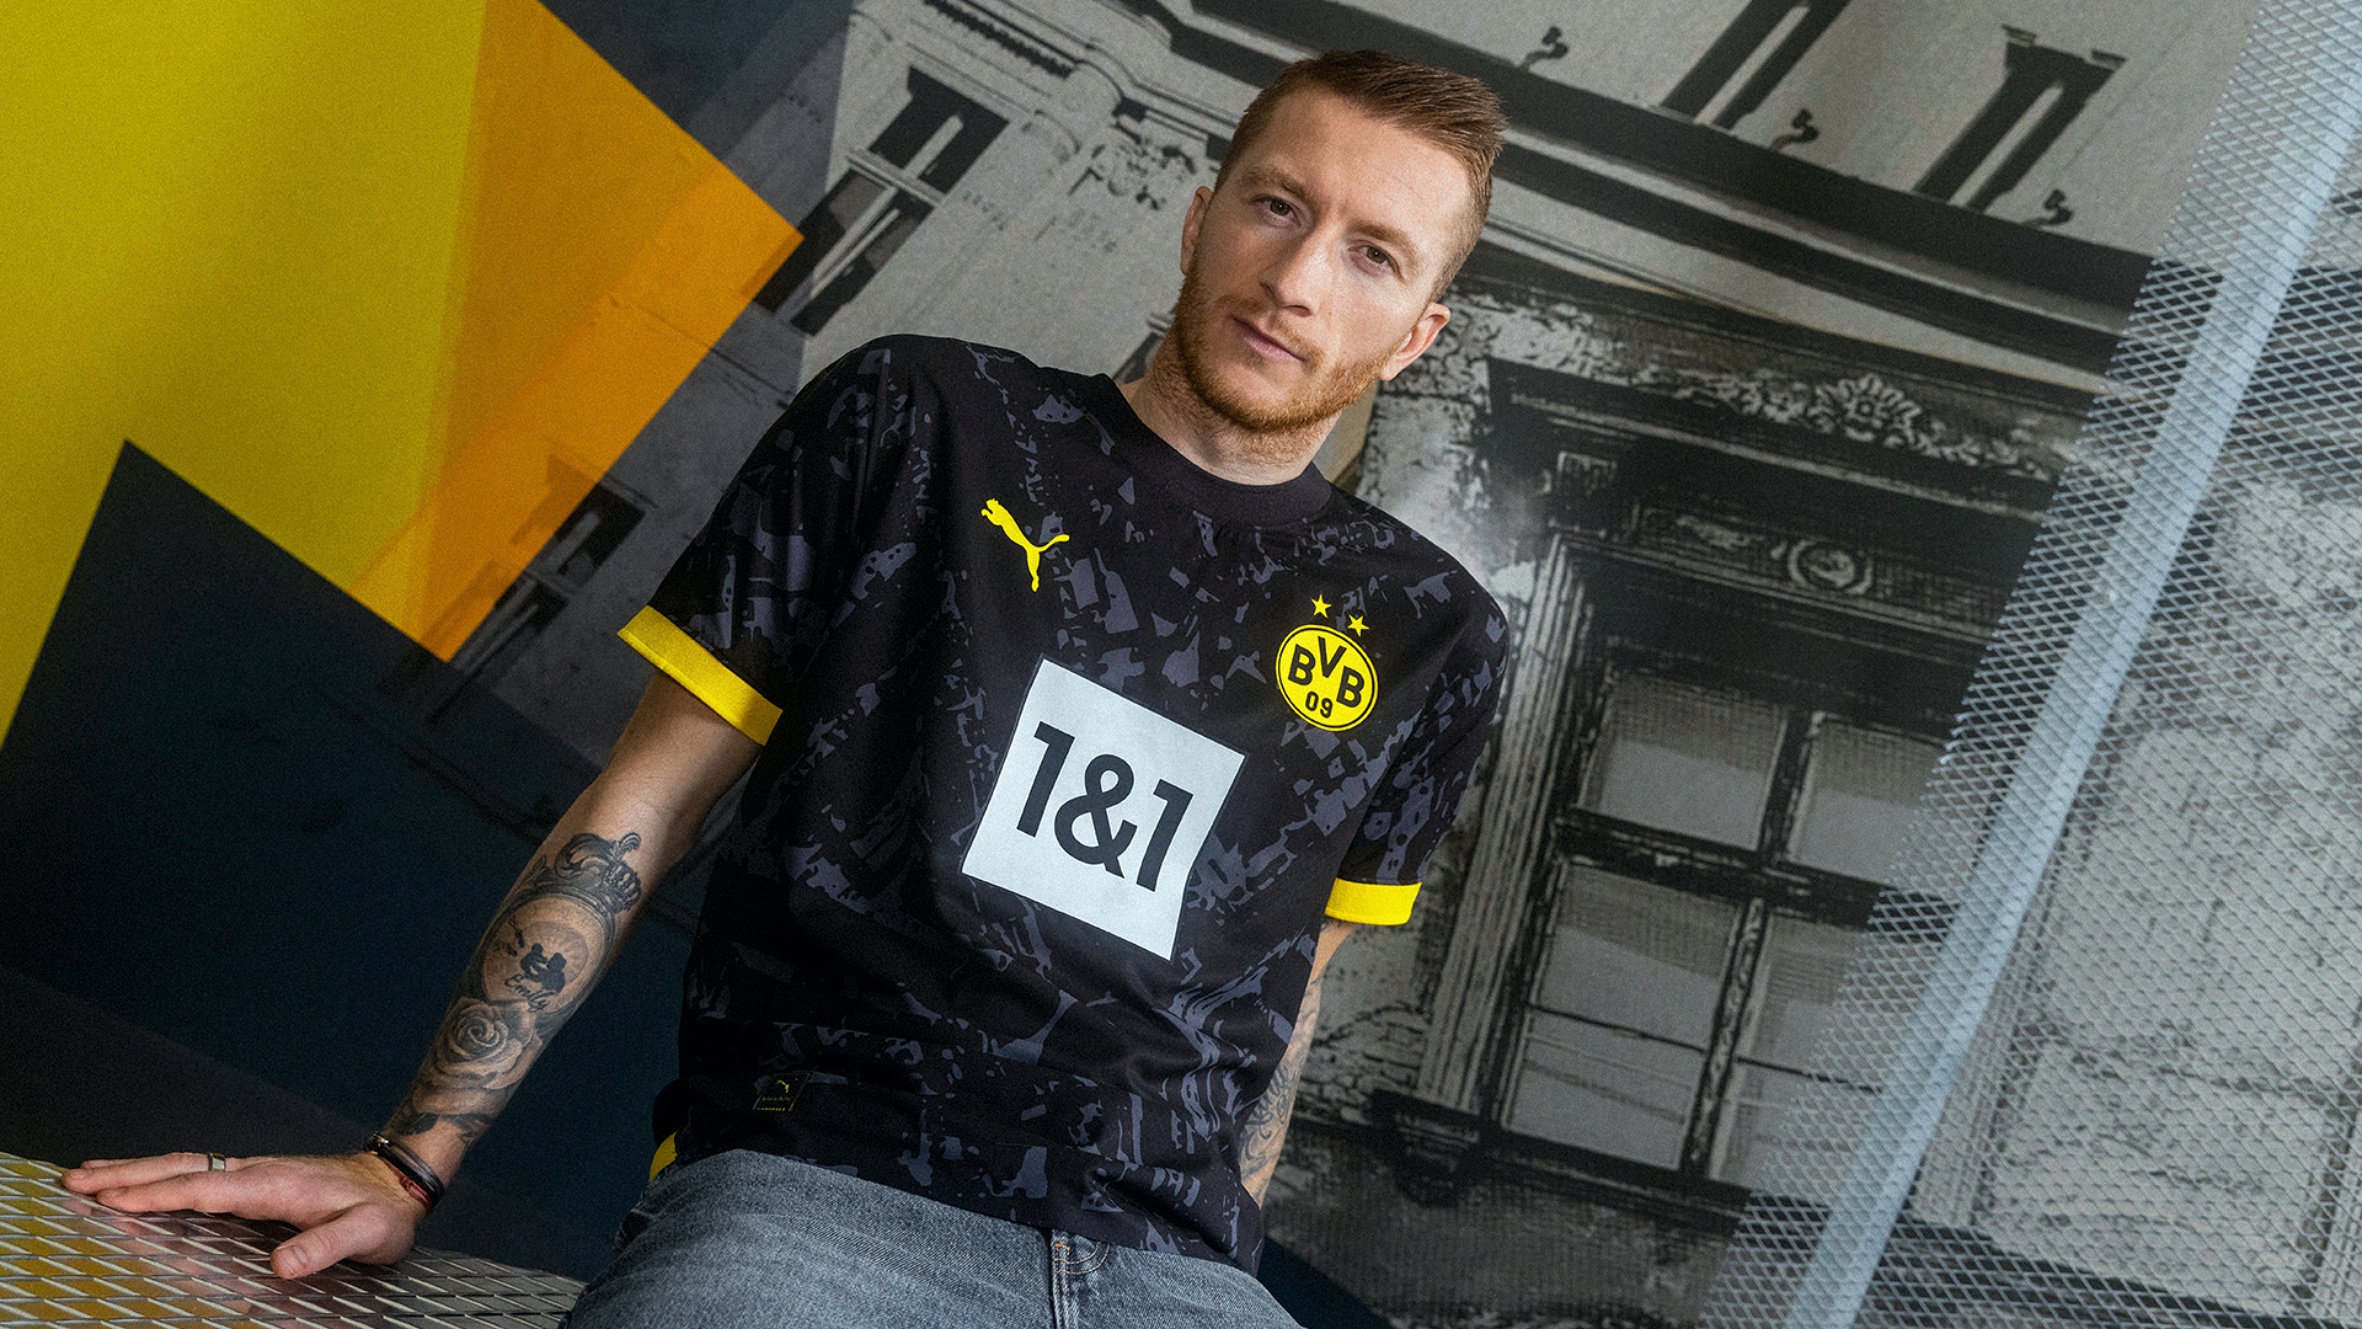 PUMA & Borussia Dortmund Reveal Fan-Designed 23/24 Away Shirt